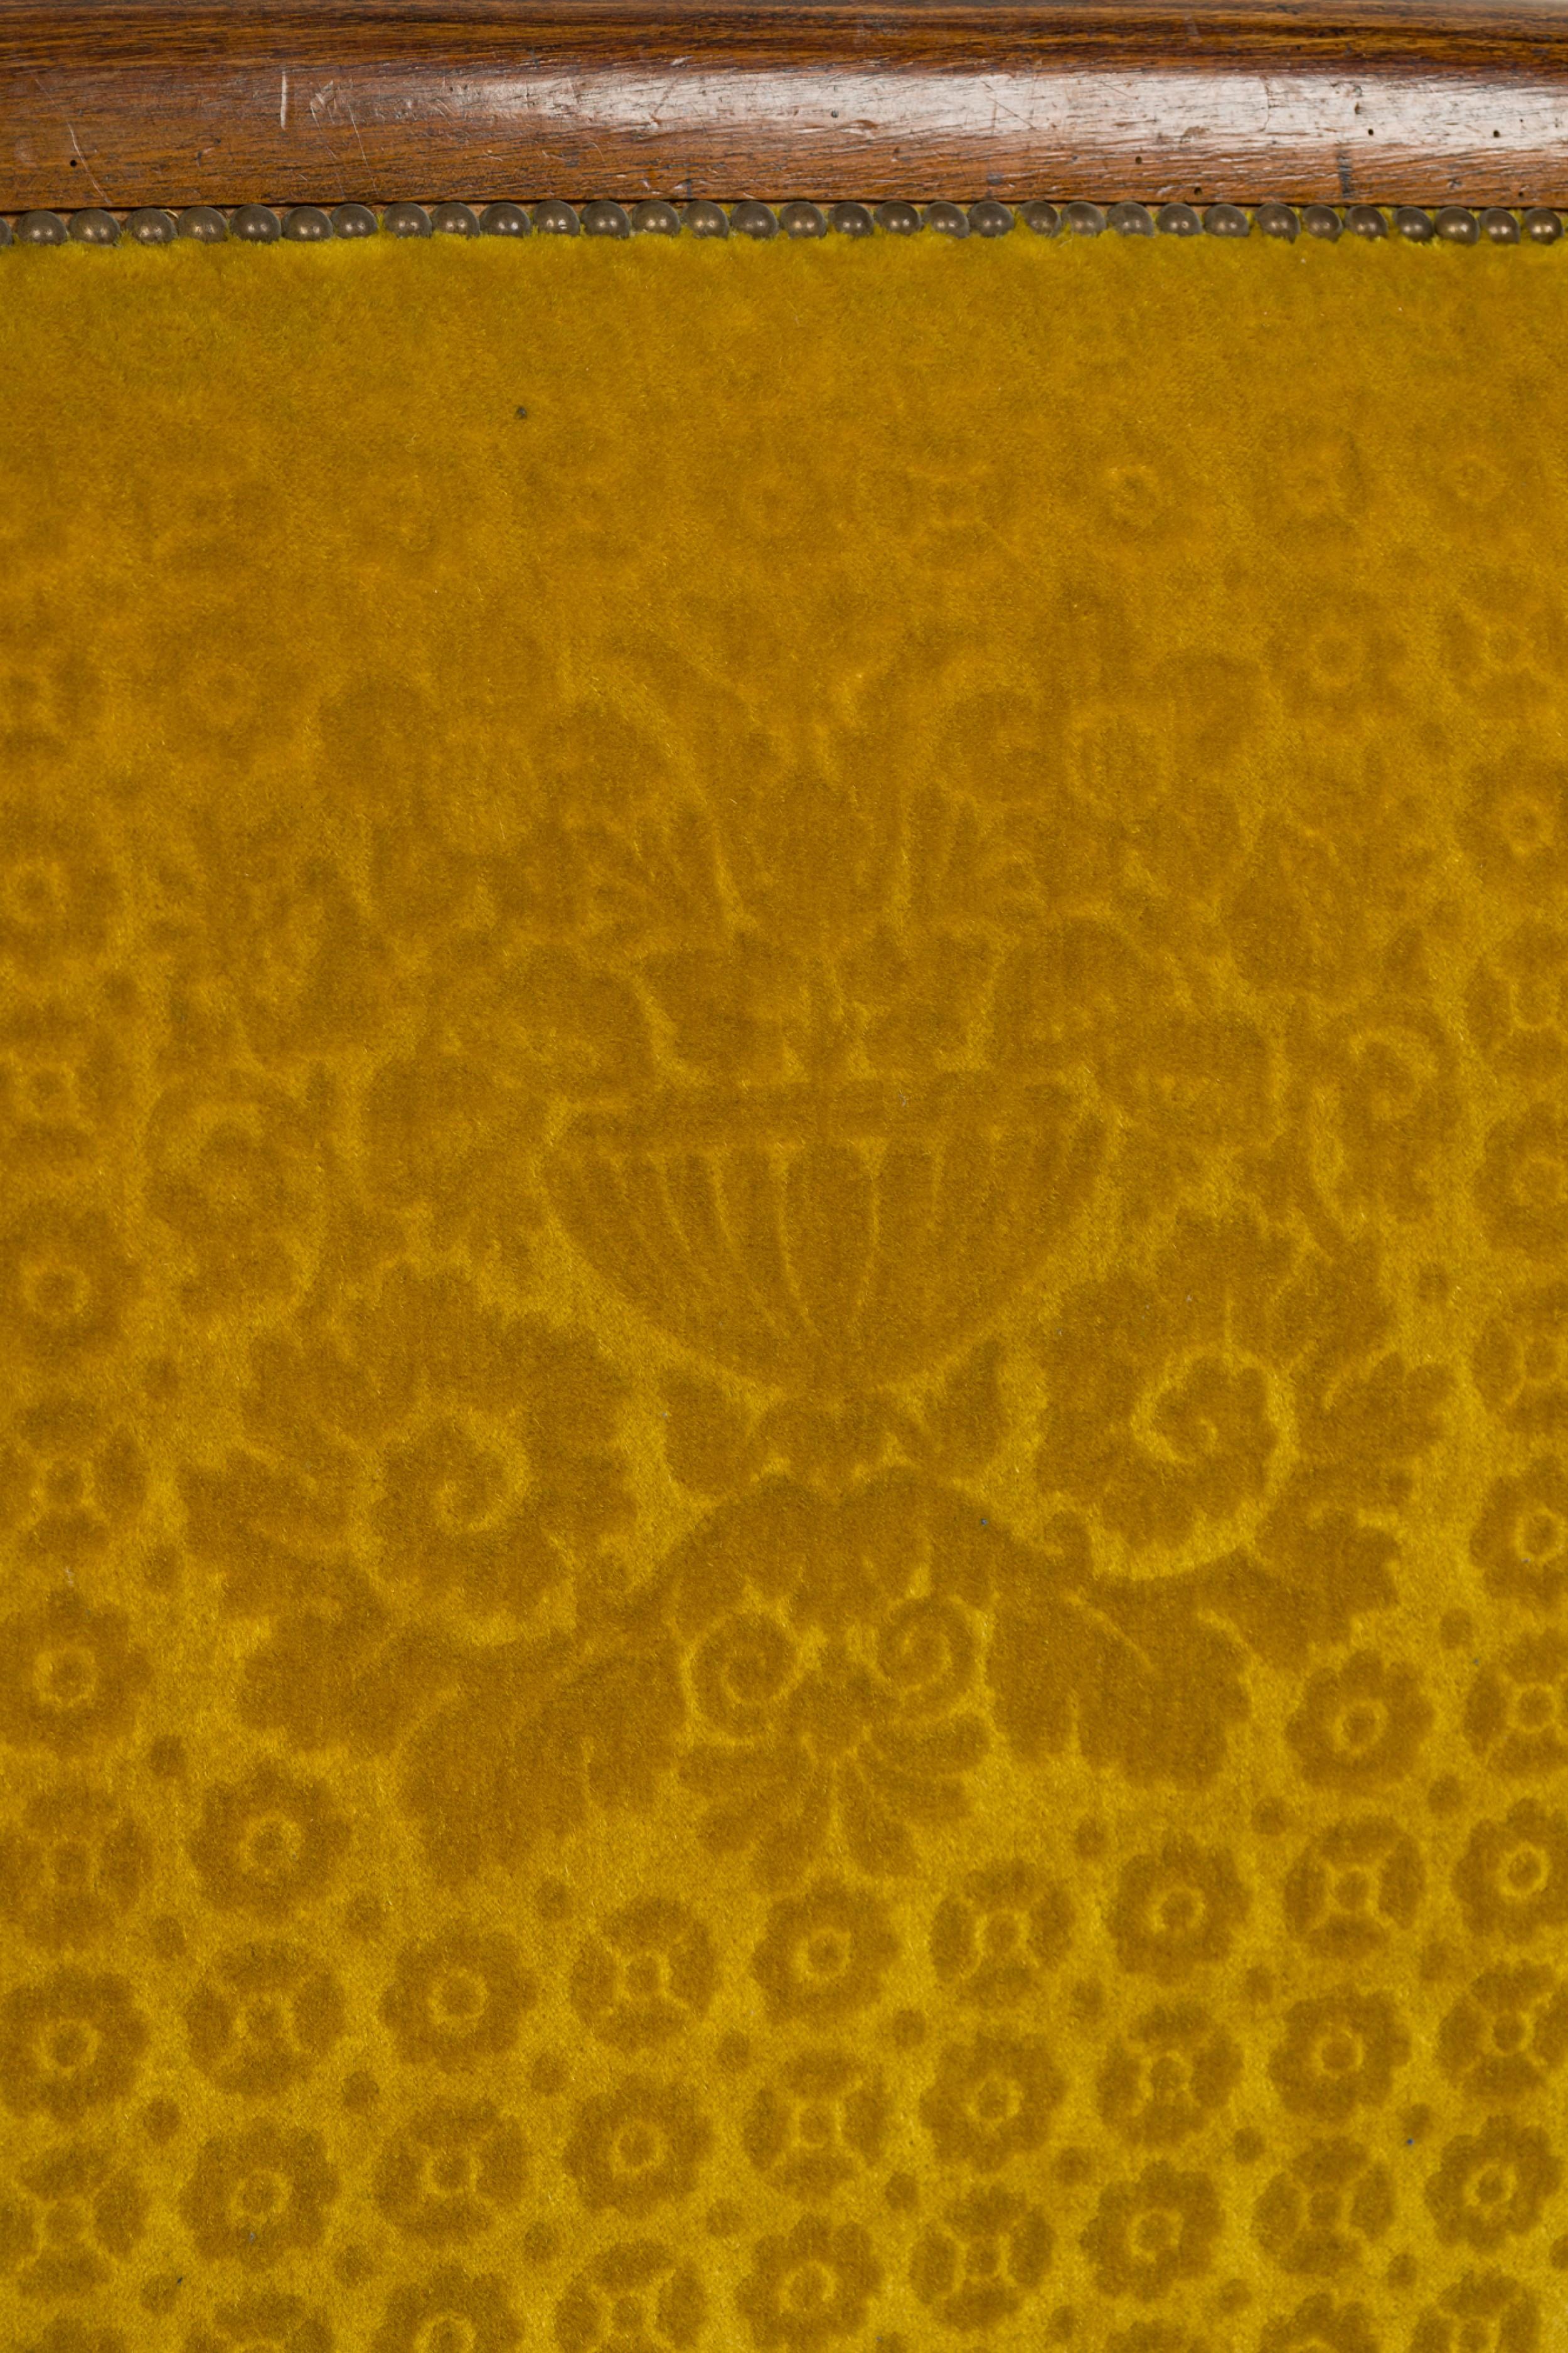 Européen Biedermeier King-Size Headboard with with Yellow Upholstery (Tête de lit king-size avec tapisserie jaune) en vente